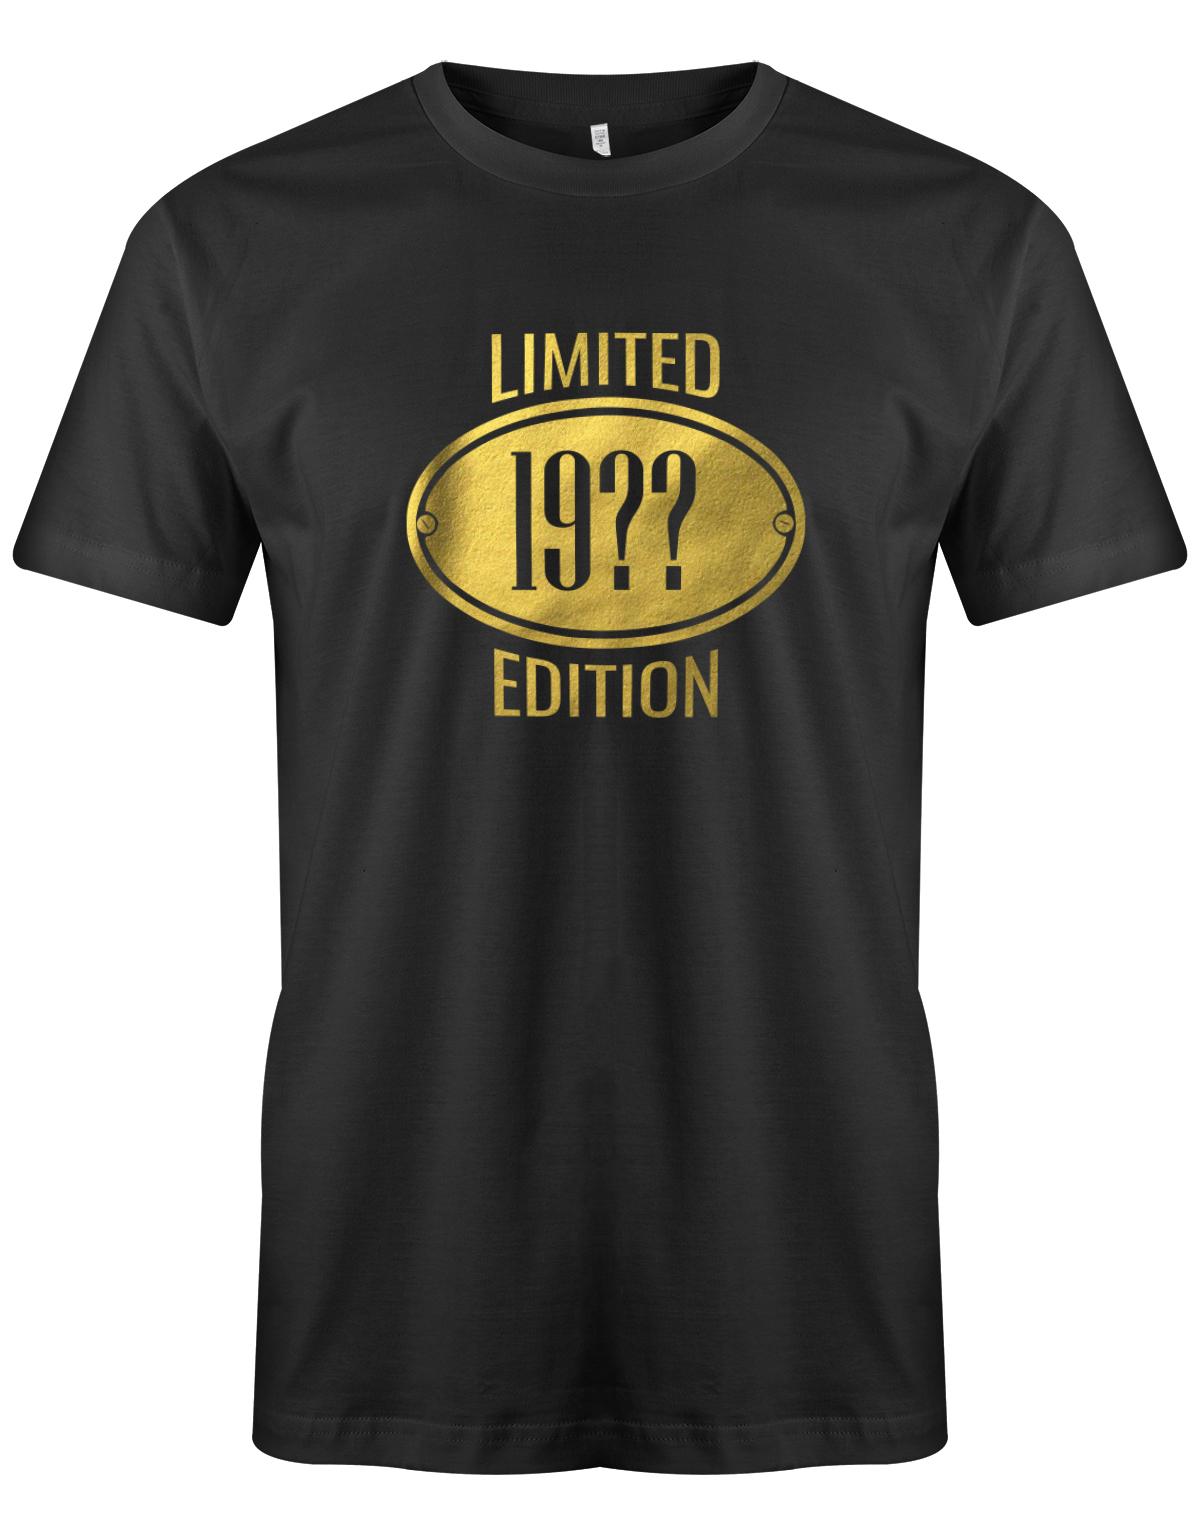 Limited-Edition-Gold-Schild-Herren-geburtstag-Shirt-SChwarz